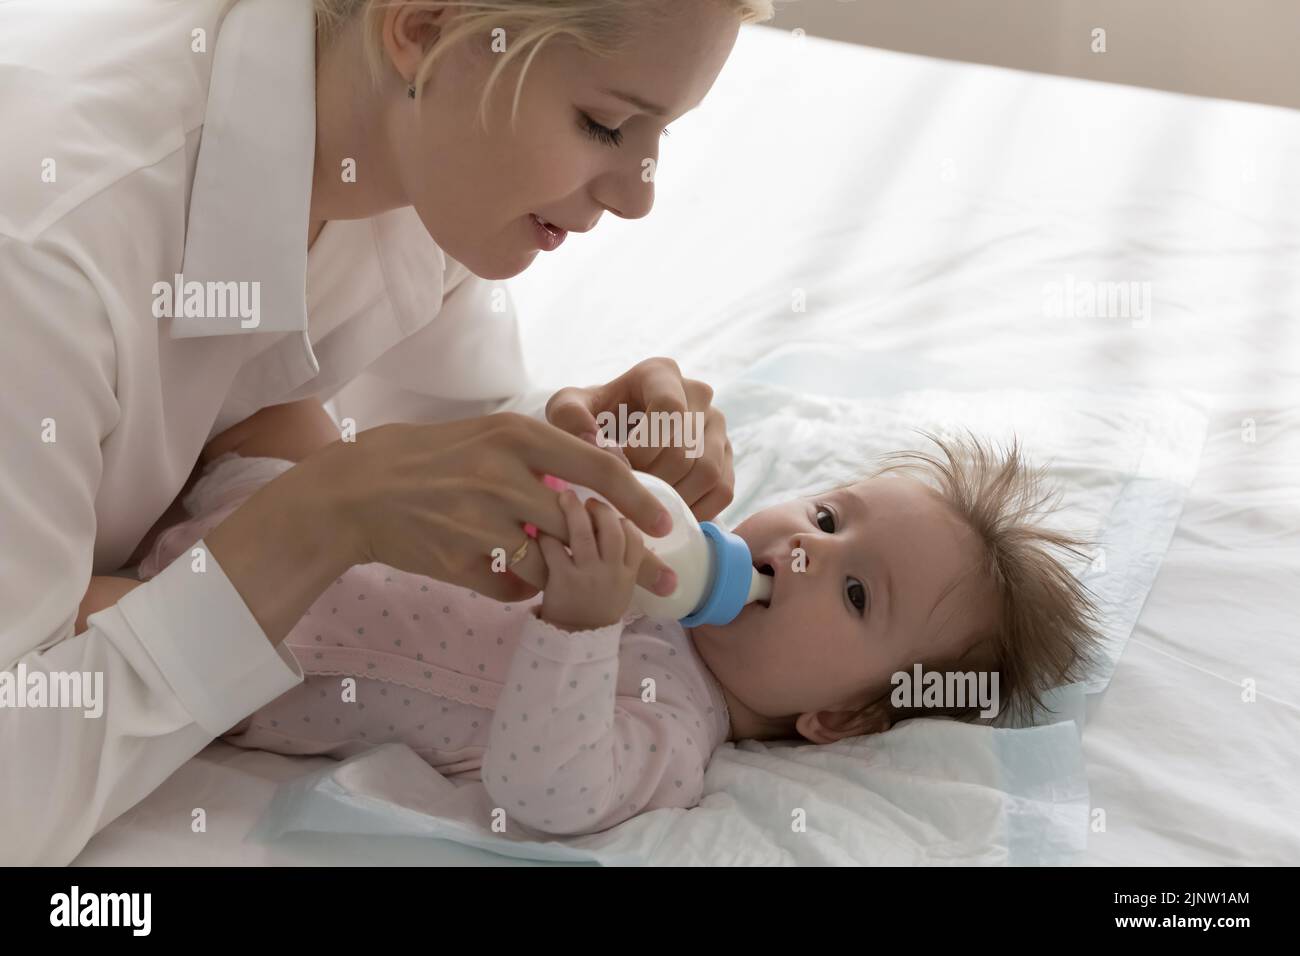 Adorable bebé tumbado en la cama chupando la leche del biberón Foto de stock